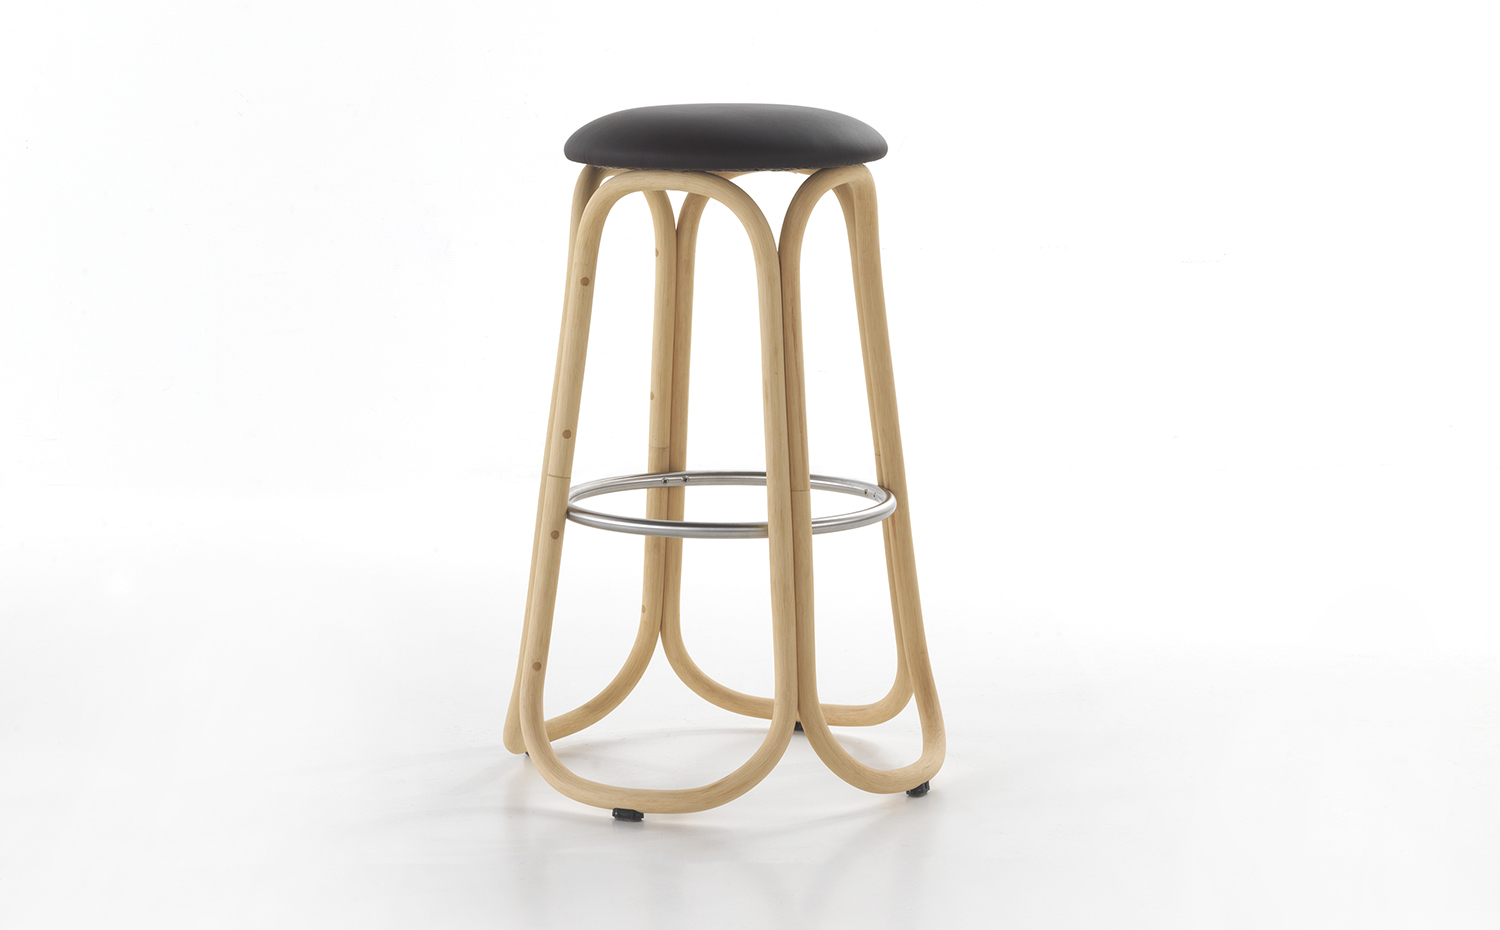 Expormim. Gres high stool by Miguel Milá 01. Entre los diversos acabados destaca este de color natural. Se ha despojado de la piel al ratán para trabajar mejor esta materia prima 